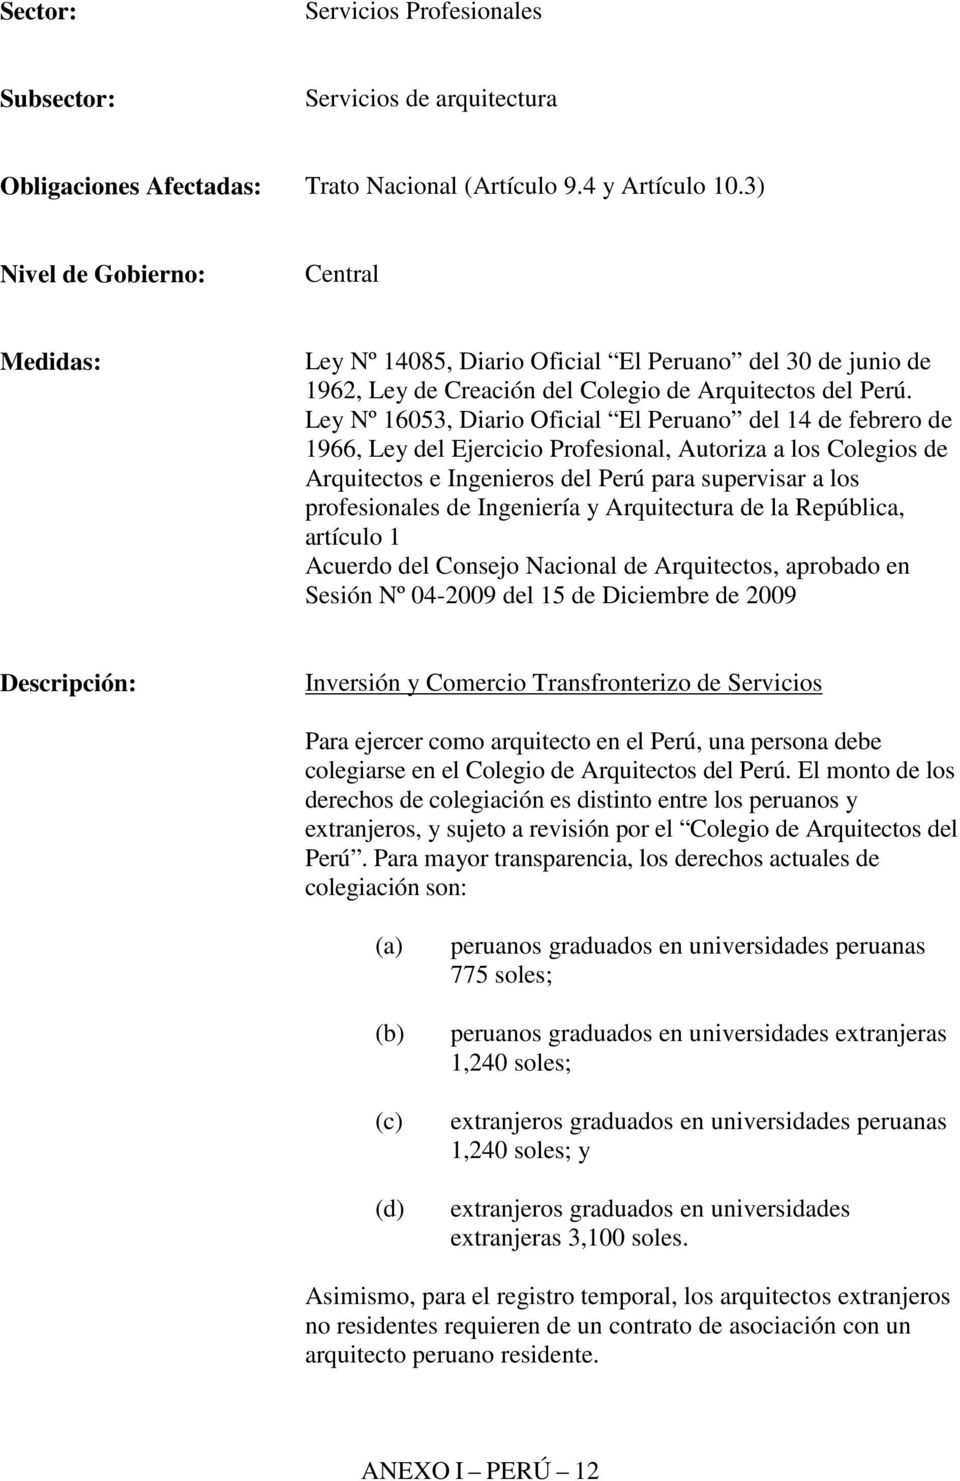 Ley Nº 16053, Diario Oficial El Peruano del 14 de febrero de 1966, Ley del Ejercicio Profesional, Autoriza a los Colegios de Arquitectos e Ingenieros del Perú para supervisar a los profesionales de